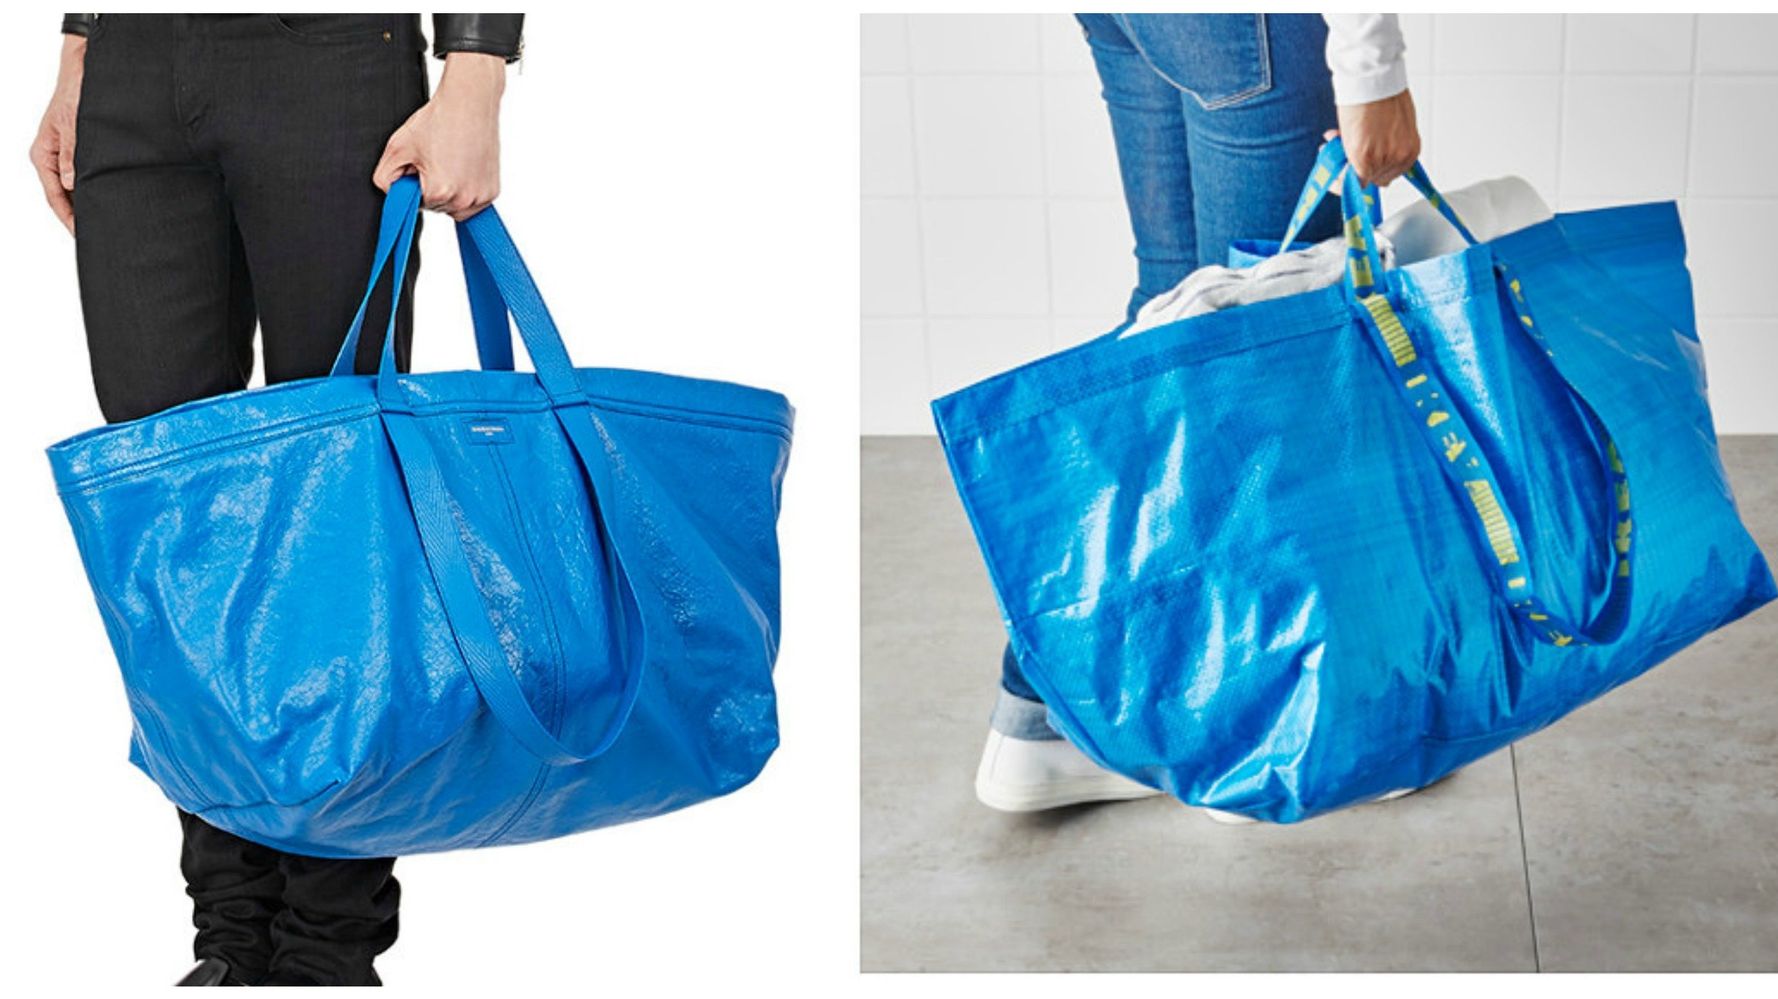 Balenciaga Now Sells A $2,145 Version Of Ikea's Blue Bag |